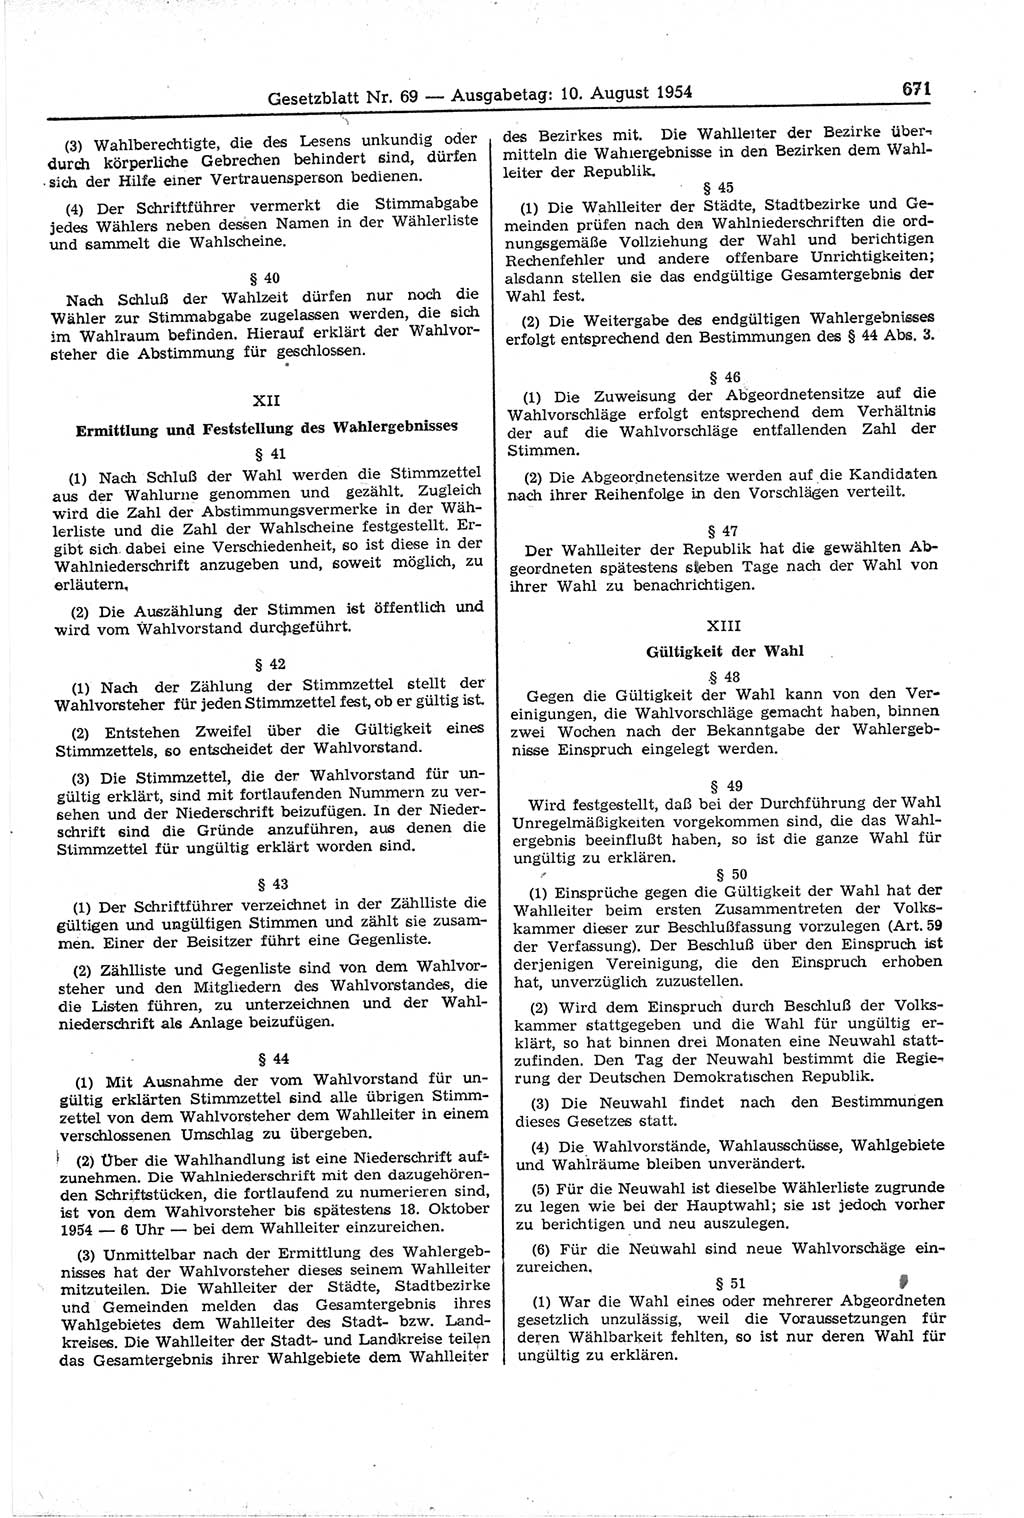 Gesetzblatt (GBl.) der Deutschen Demokratischen Republik (DDR) 1954, Seite 671 (GBl. DDR 1954, S. 671)